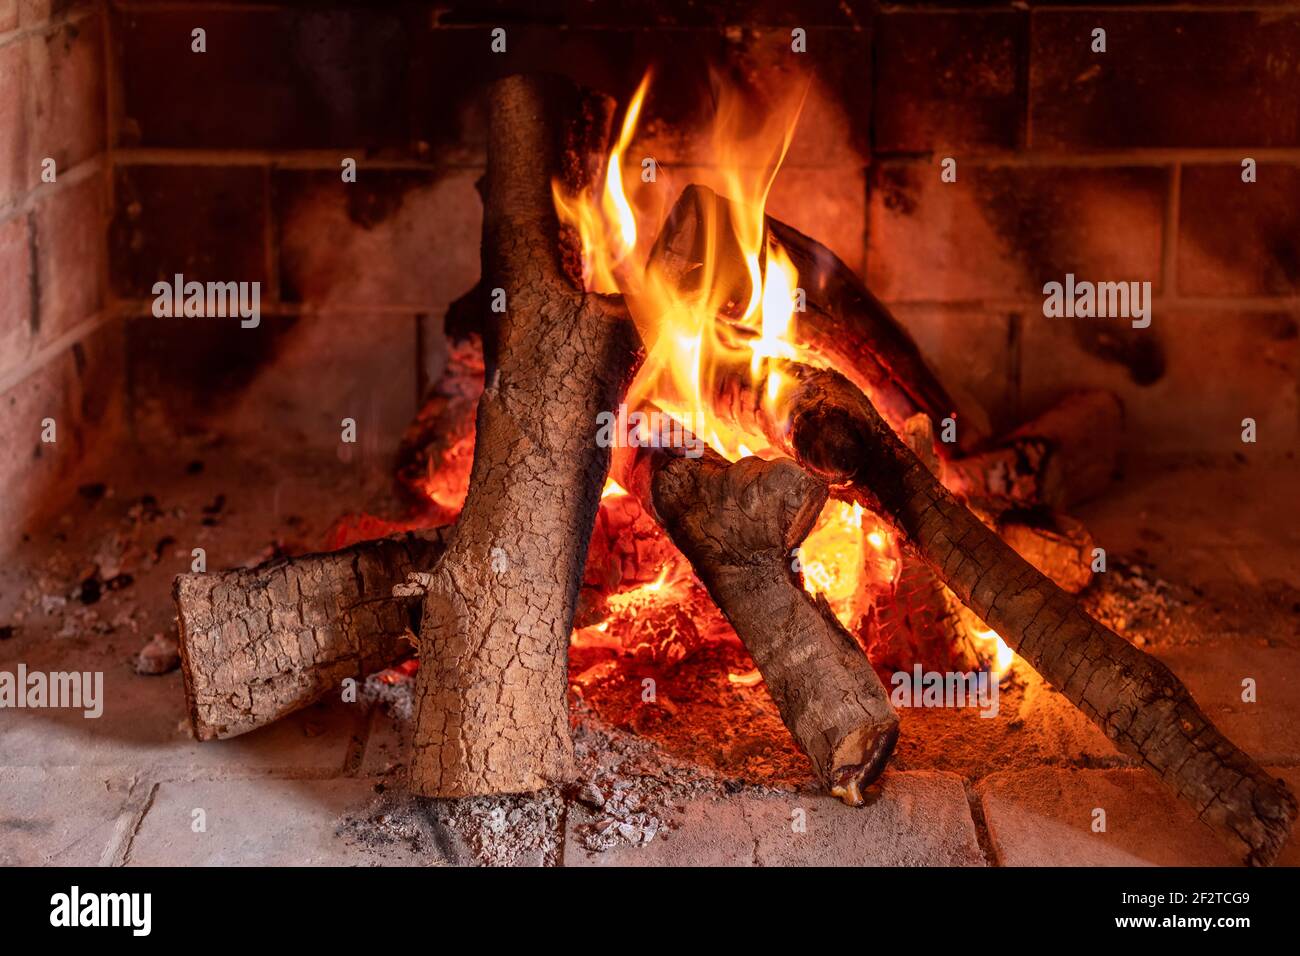 Vista de una chimenea encendida fotografías e imágenes de alta resolución -  Alamy